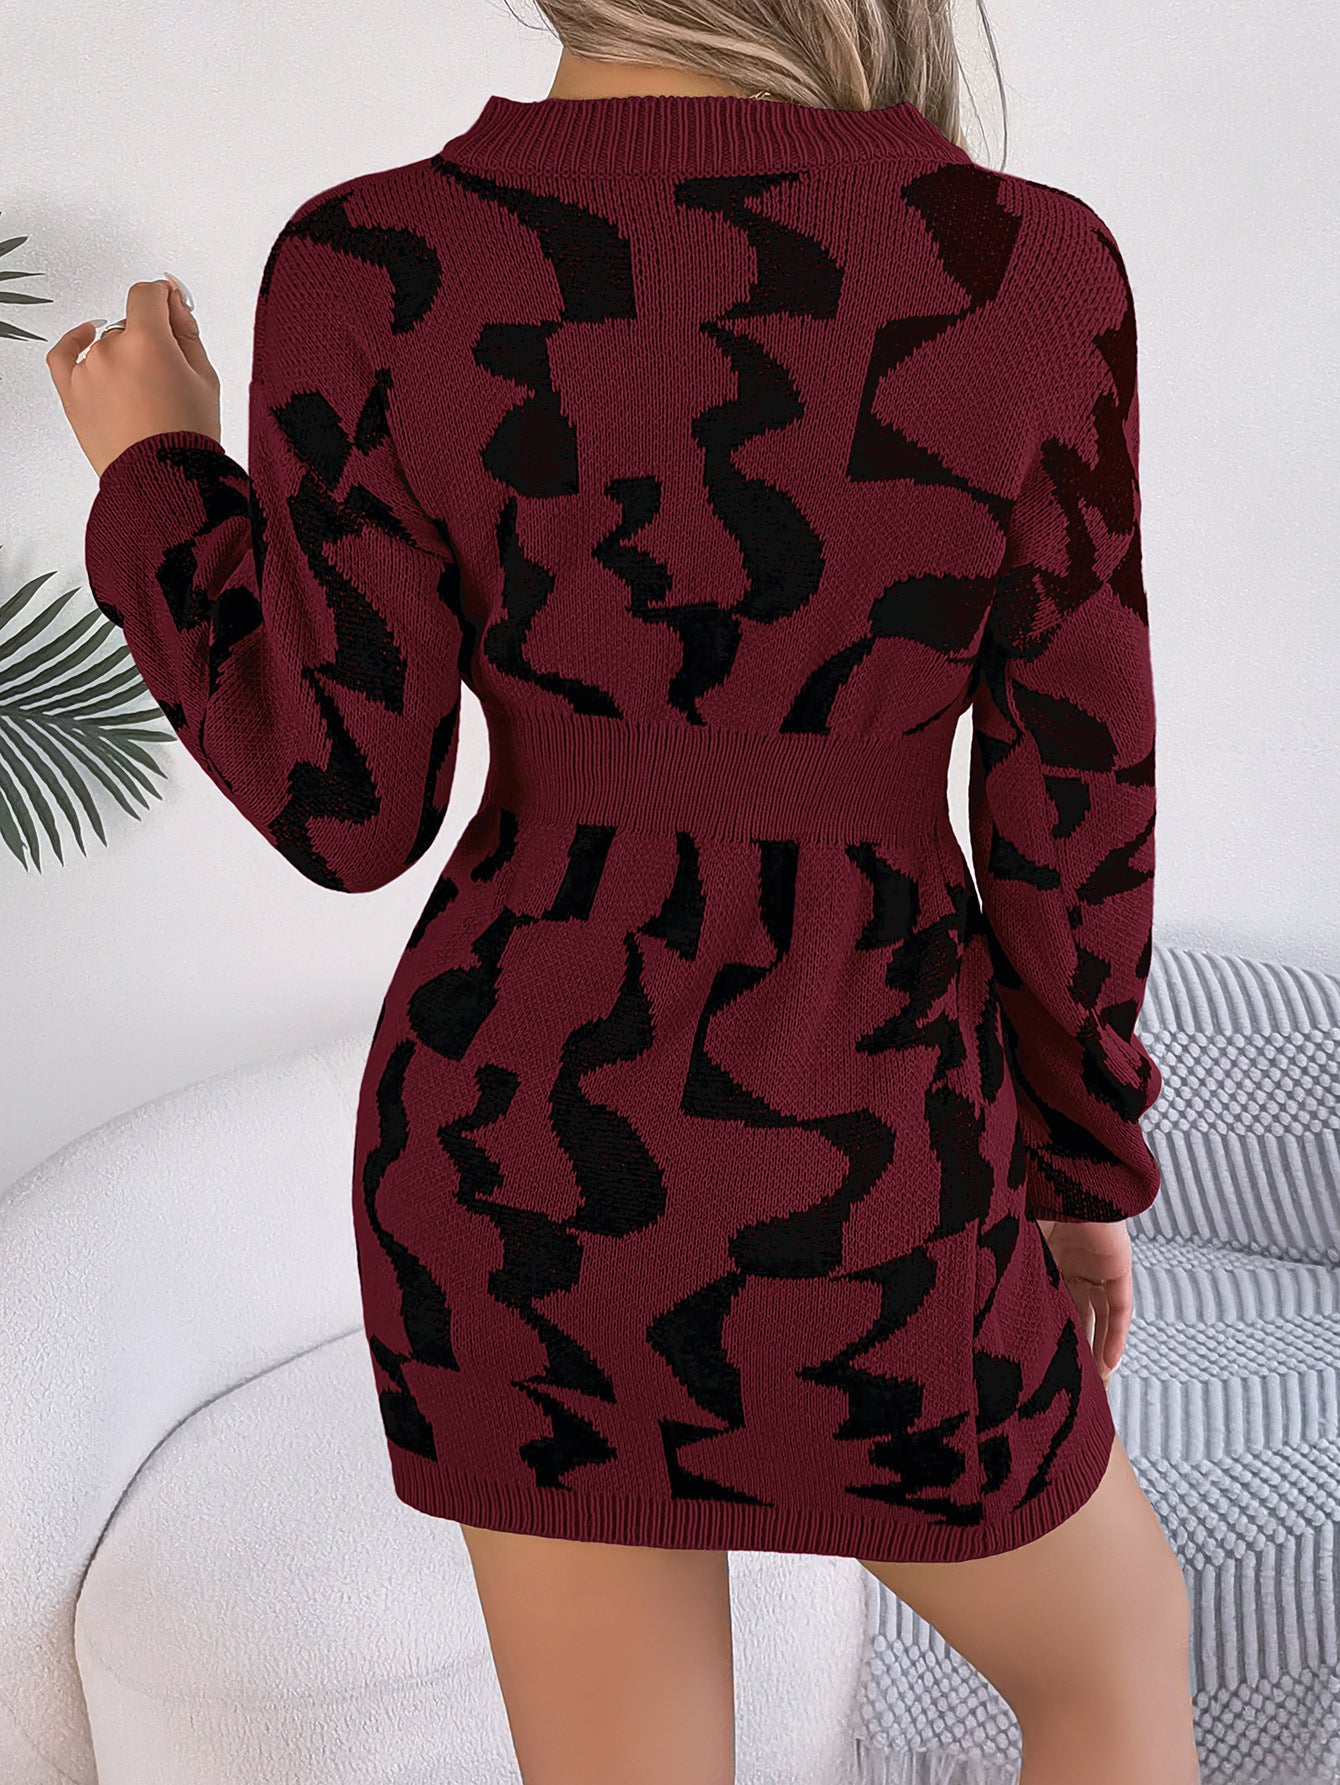 V-neck contrast color long-sleeved waist-hugging sweater dress